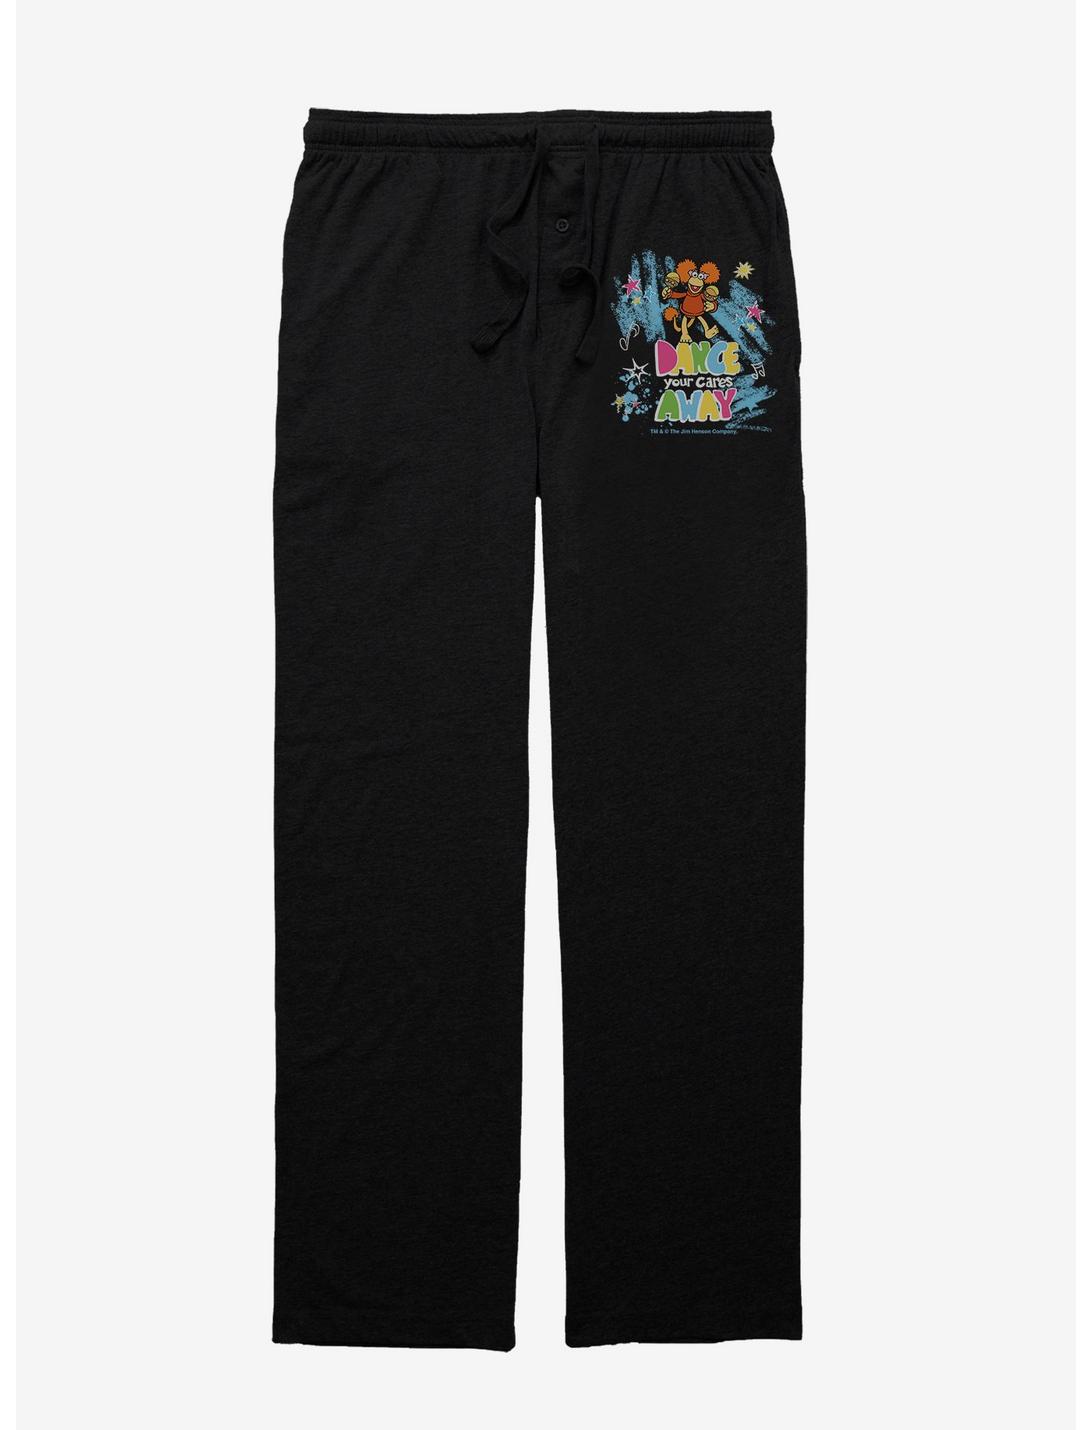 Jim Henson's Fraggle Rock Dance Cares Away Pajama Pants, BLACK, hi-res